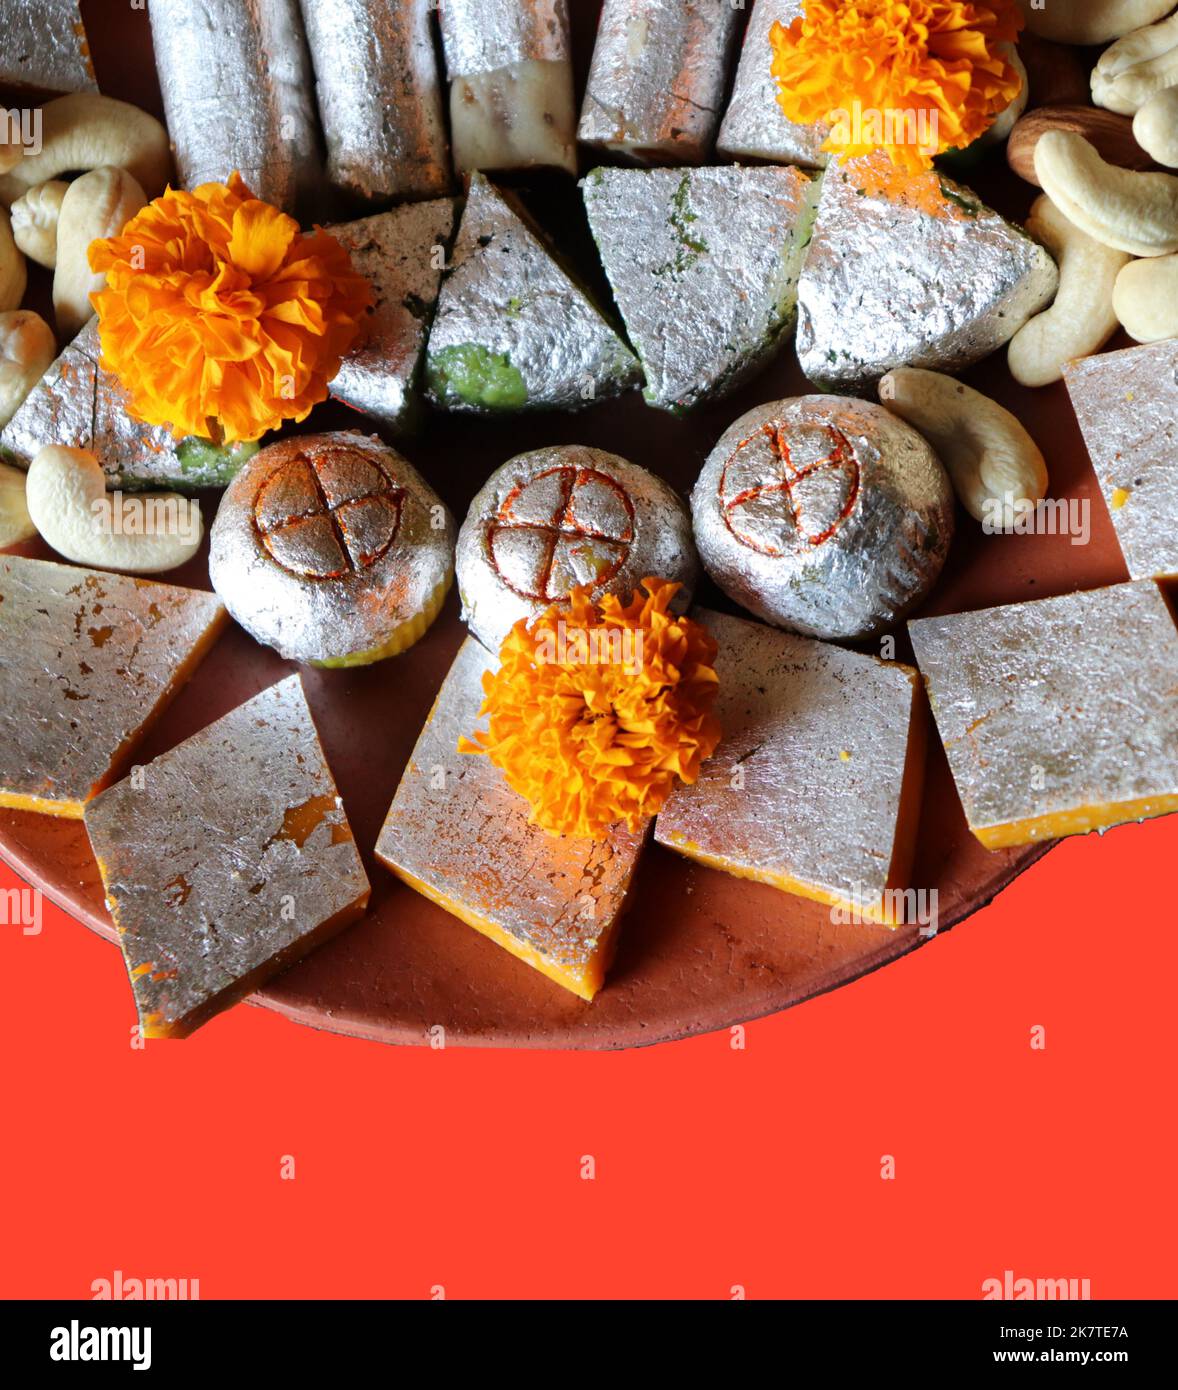 Dolci indiani assortiti / frutta secca / fiore di marigold in un piatto di terracotta / argilla su sfondo rosso - Diwali / Deepavali festival Foto Stock